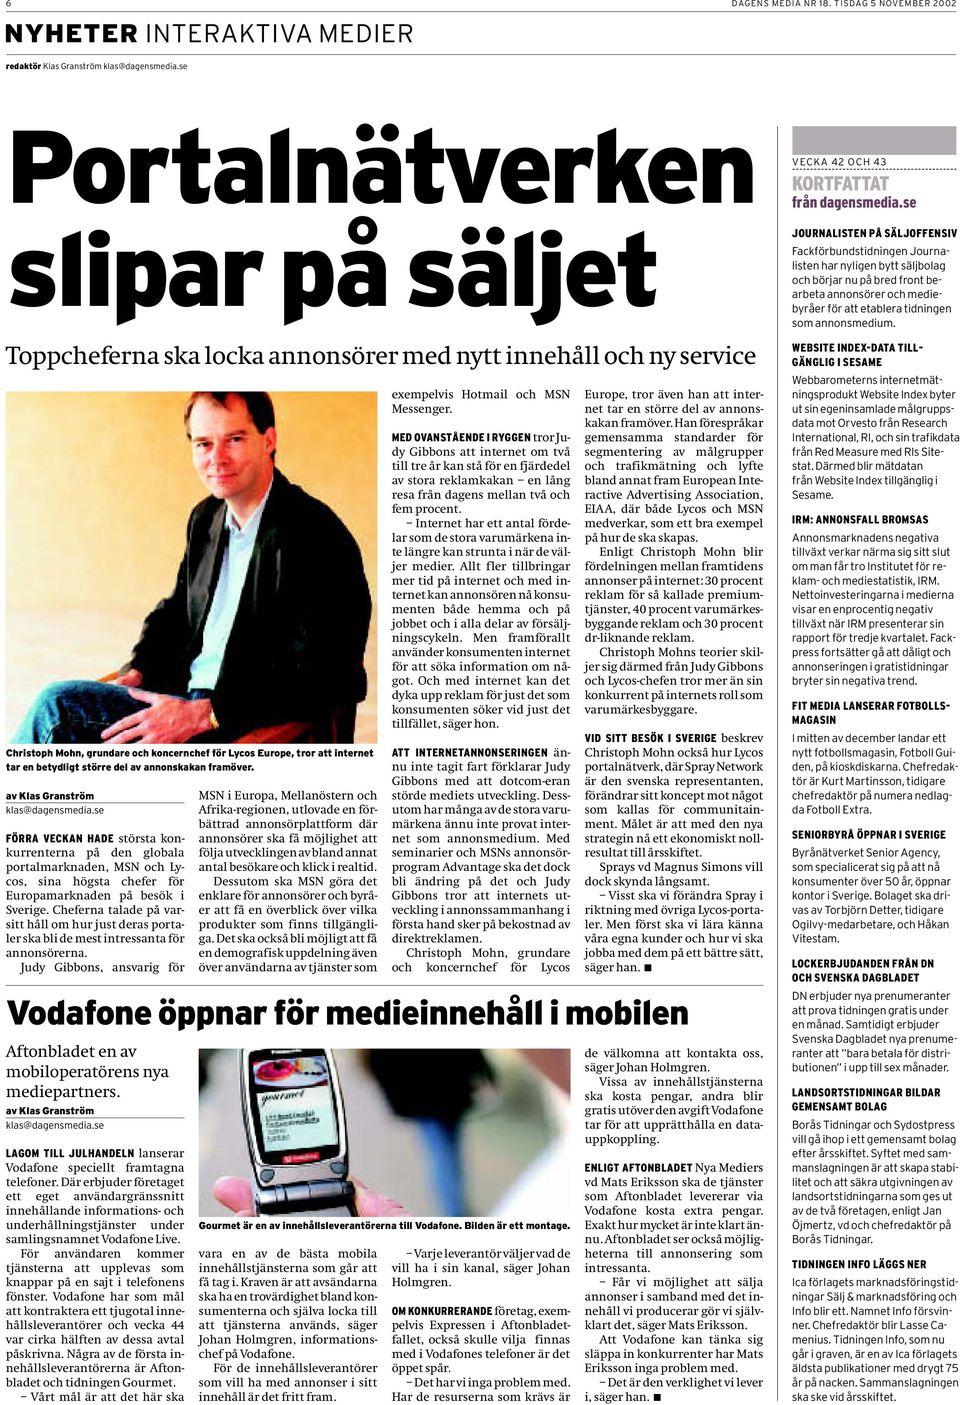 större del av annonskakan framöver. av Klas Granström klas@dagensmedia.